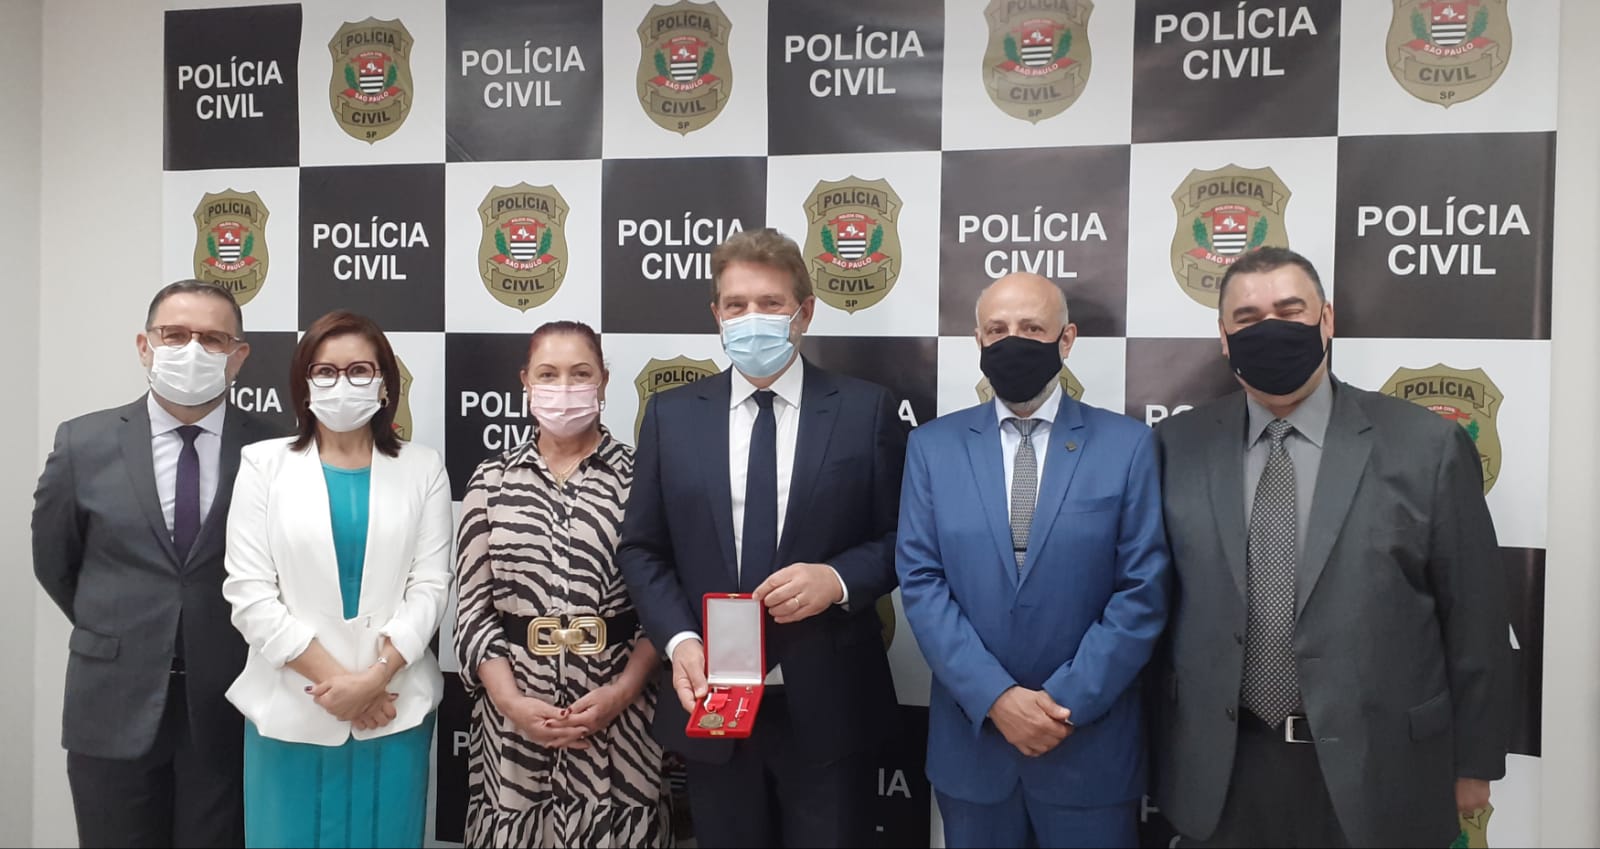 Polícia Civil outorga medalha Jorge Tibiriçá ao ex-prefeito de Praia Grande